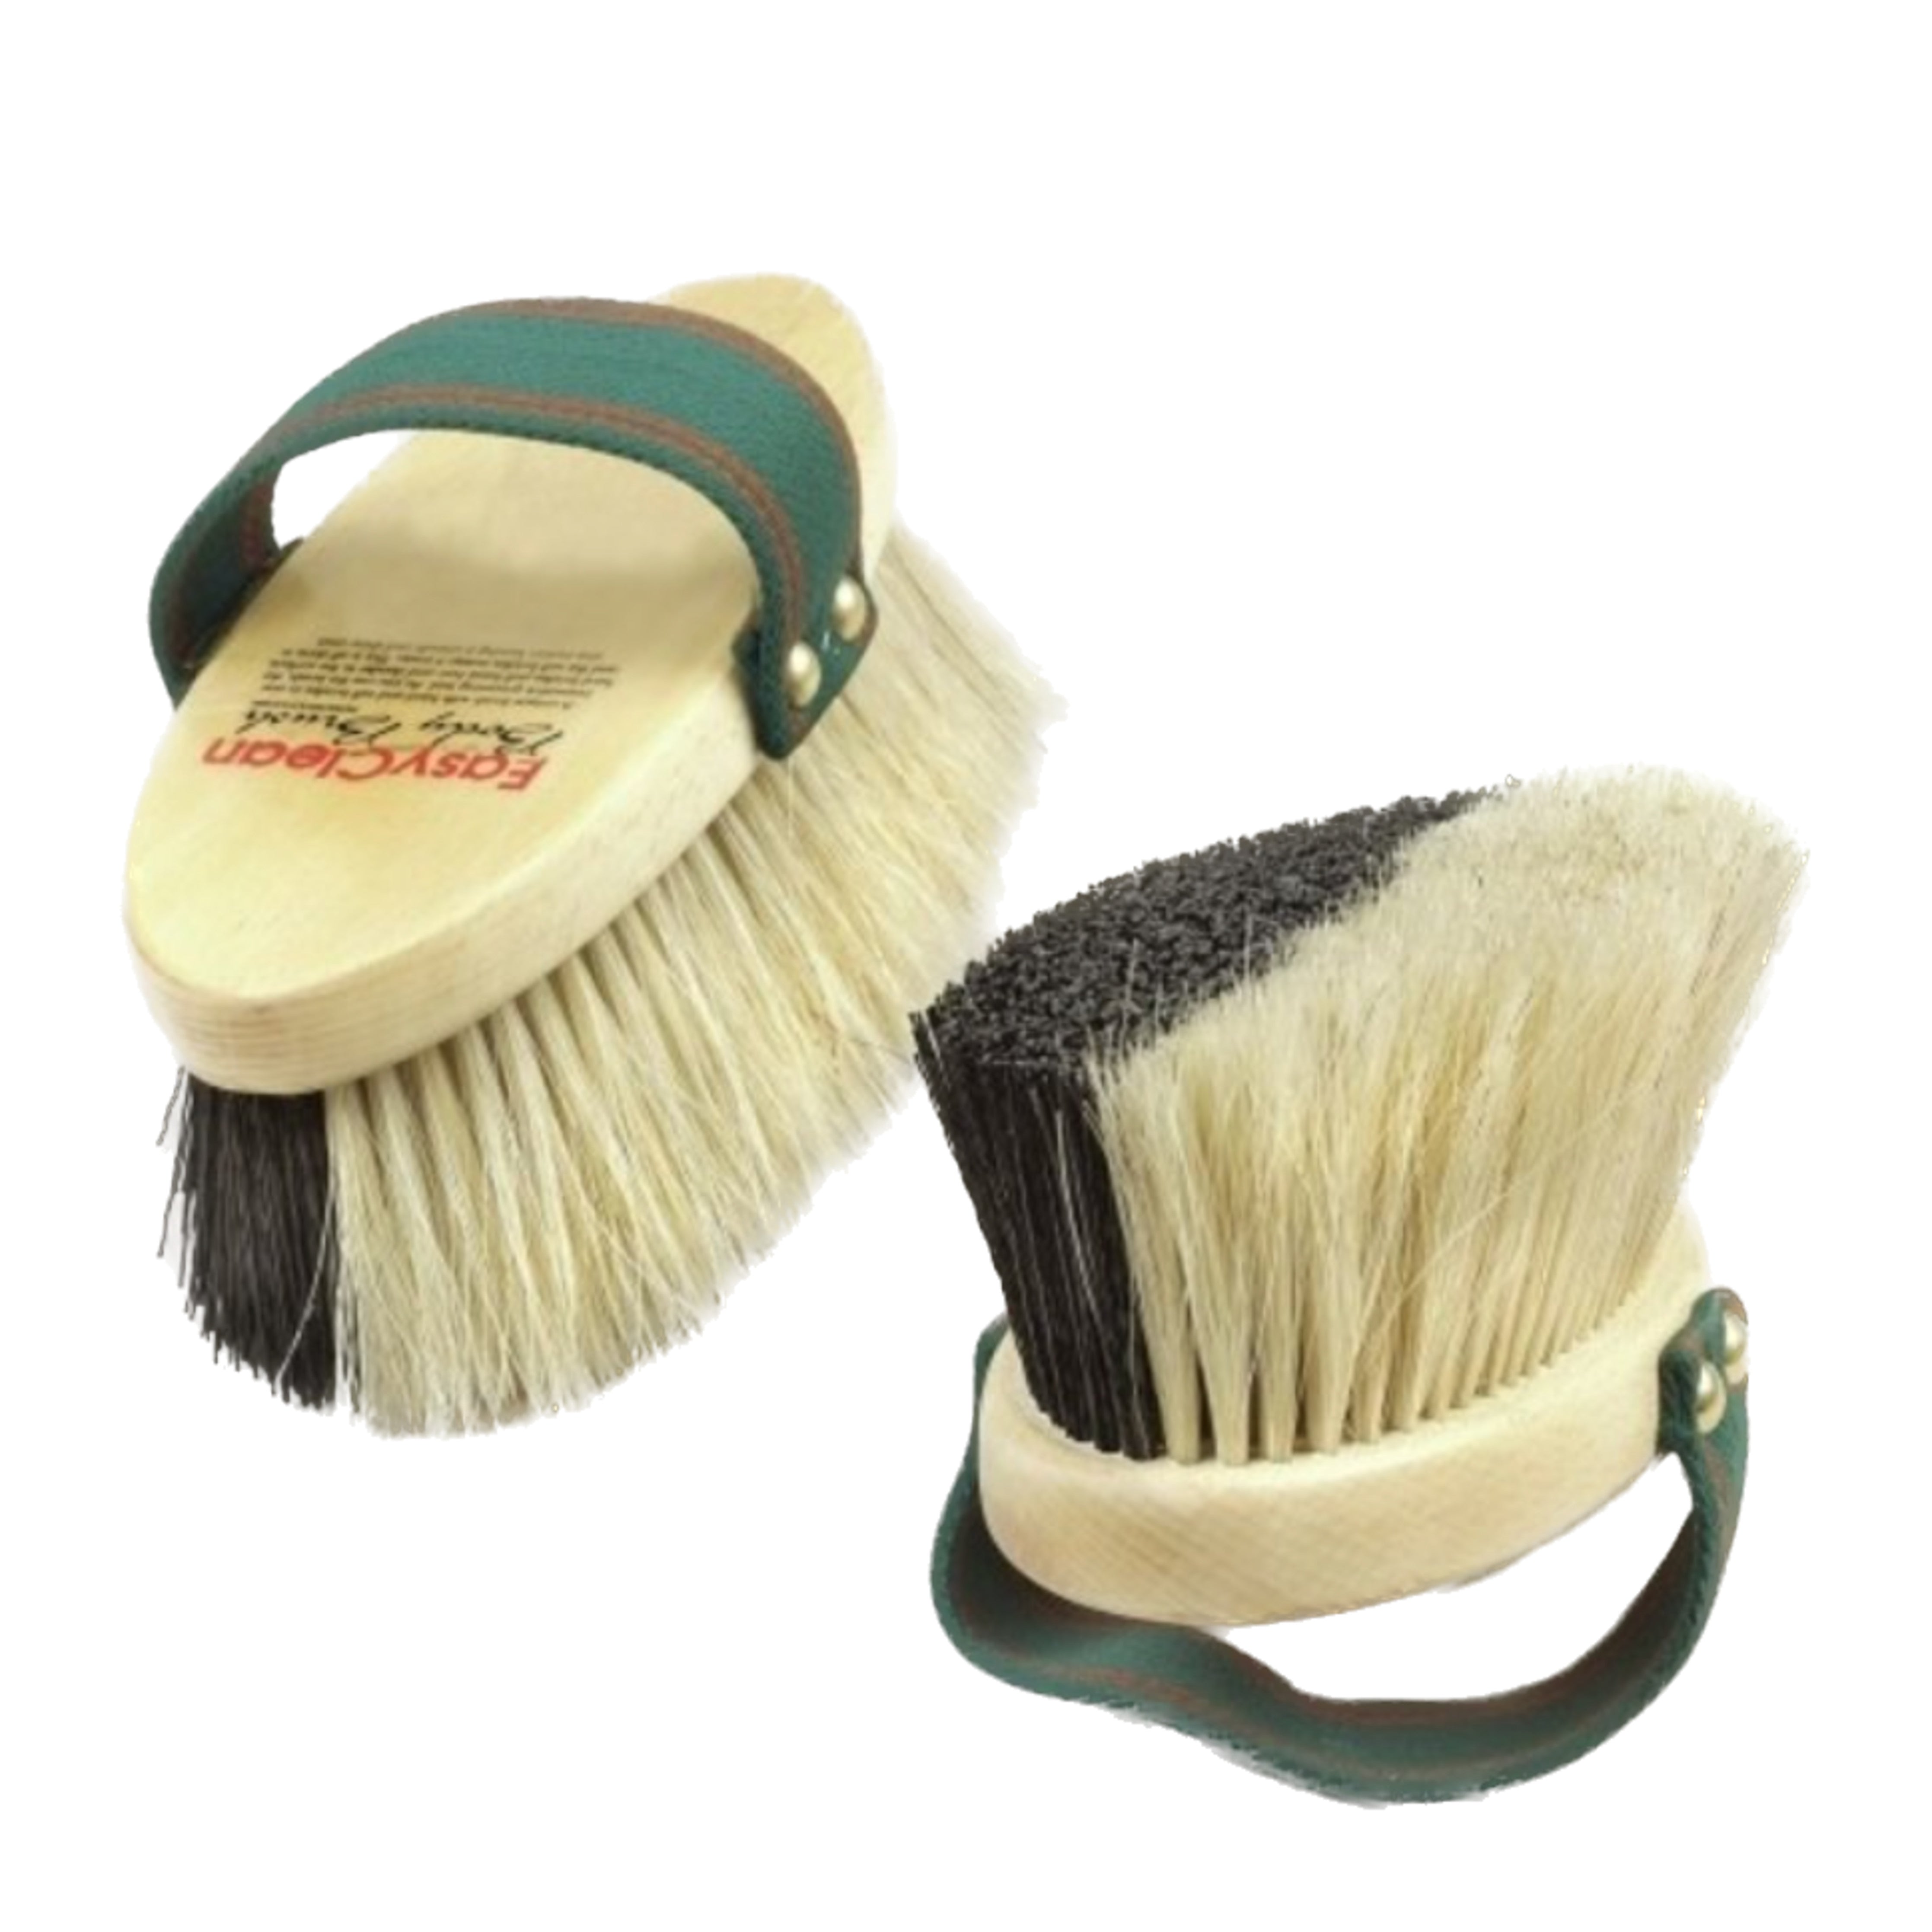 Decker Goat Hair Soft Brush- Horse Grooming Brushes